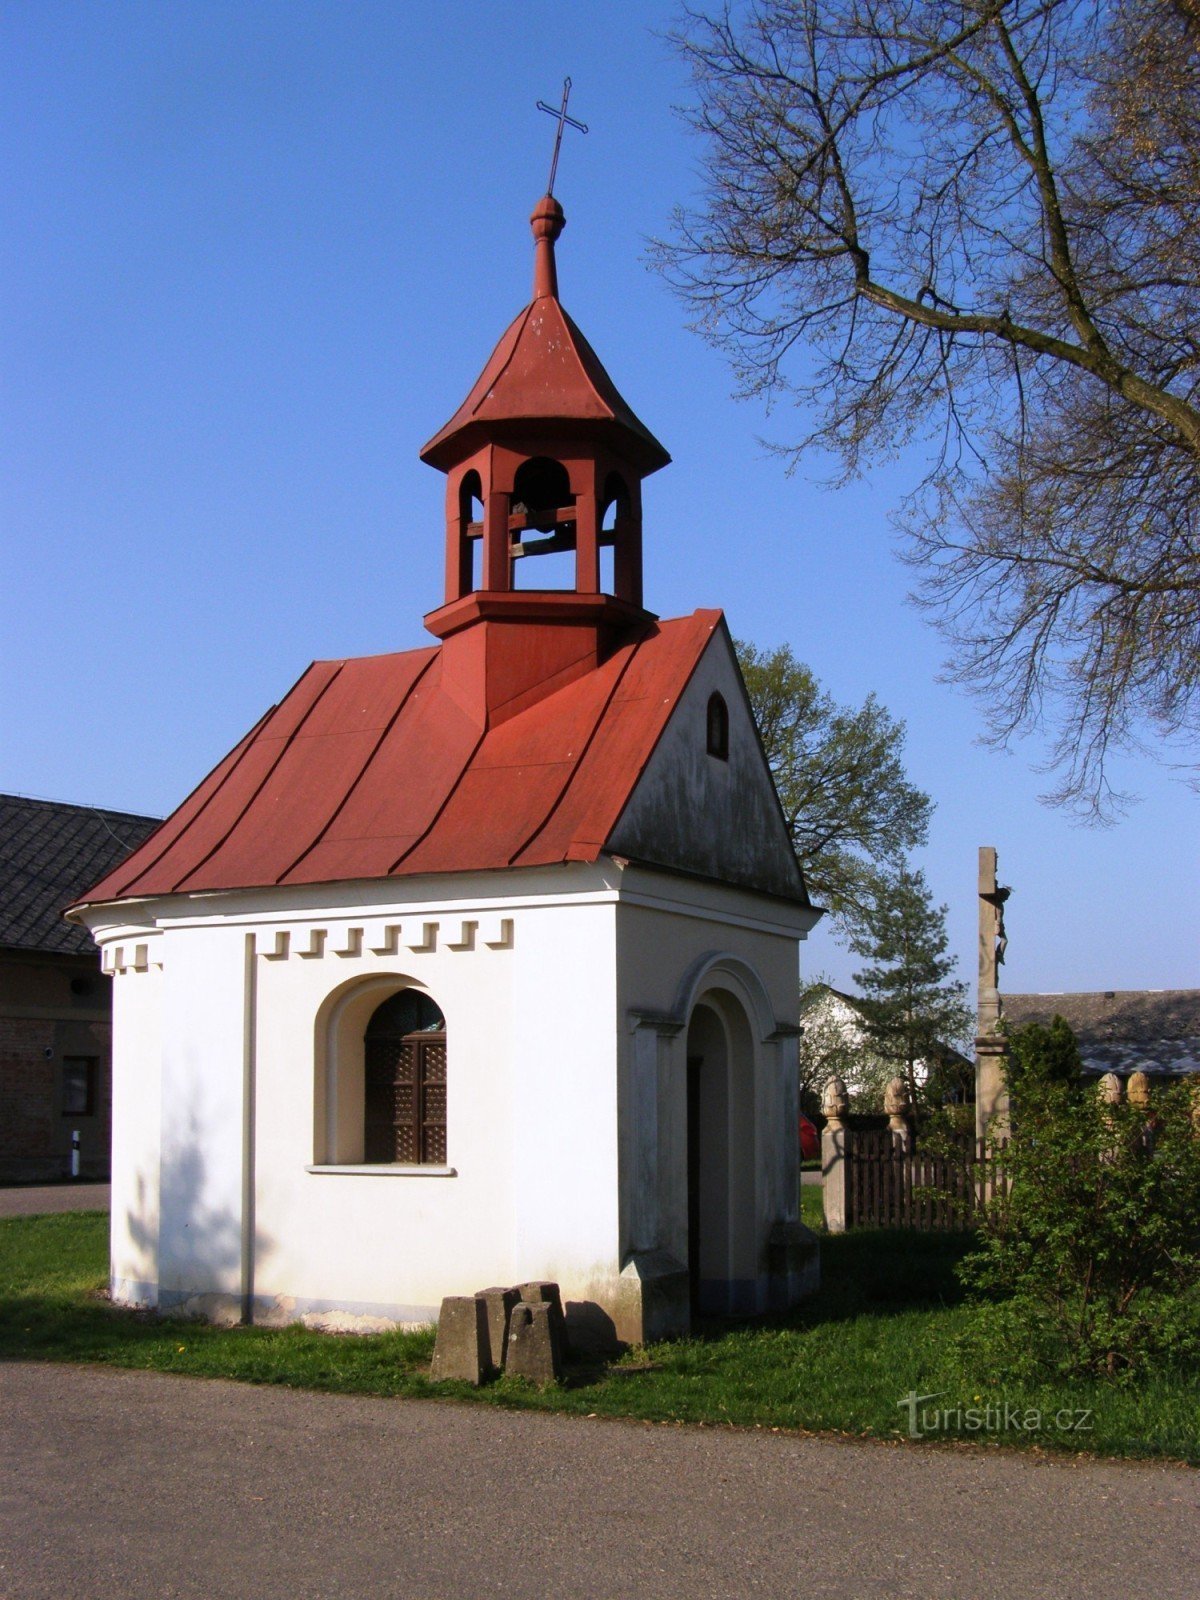 Town - chapel